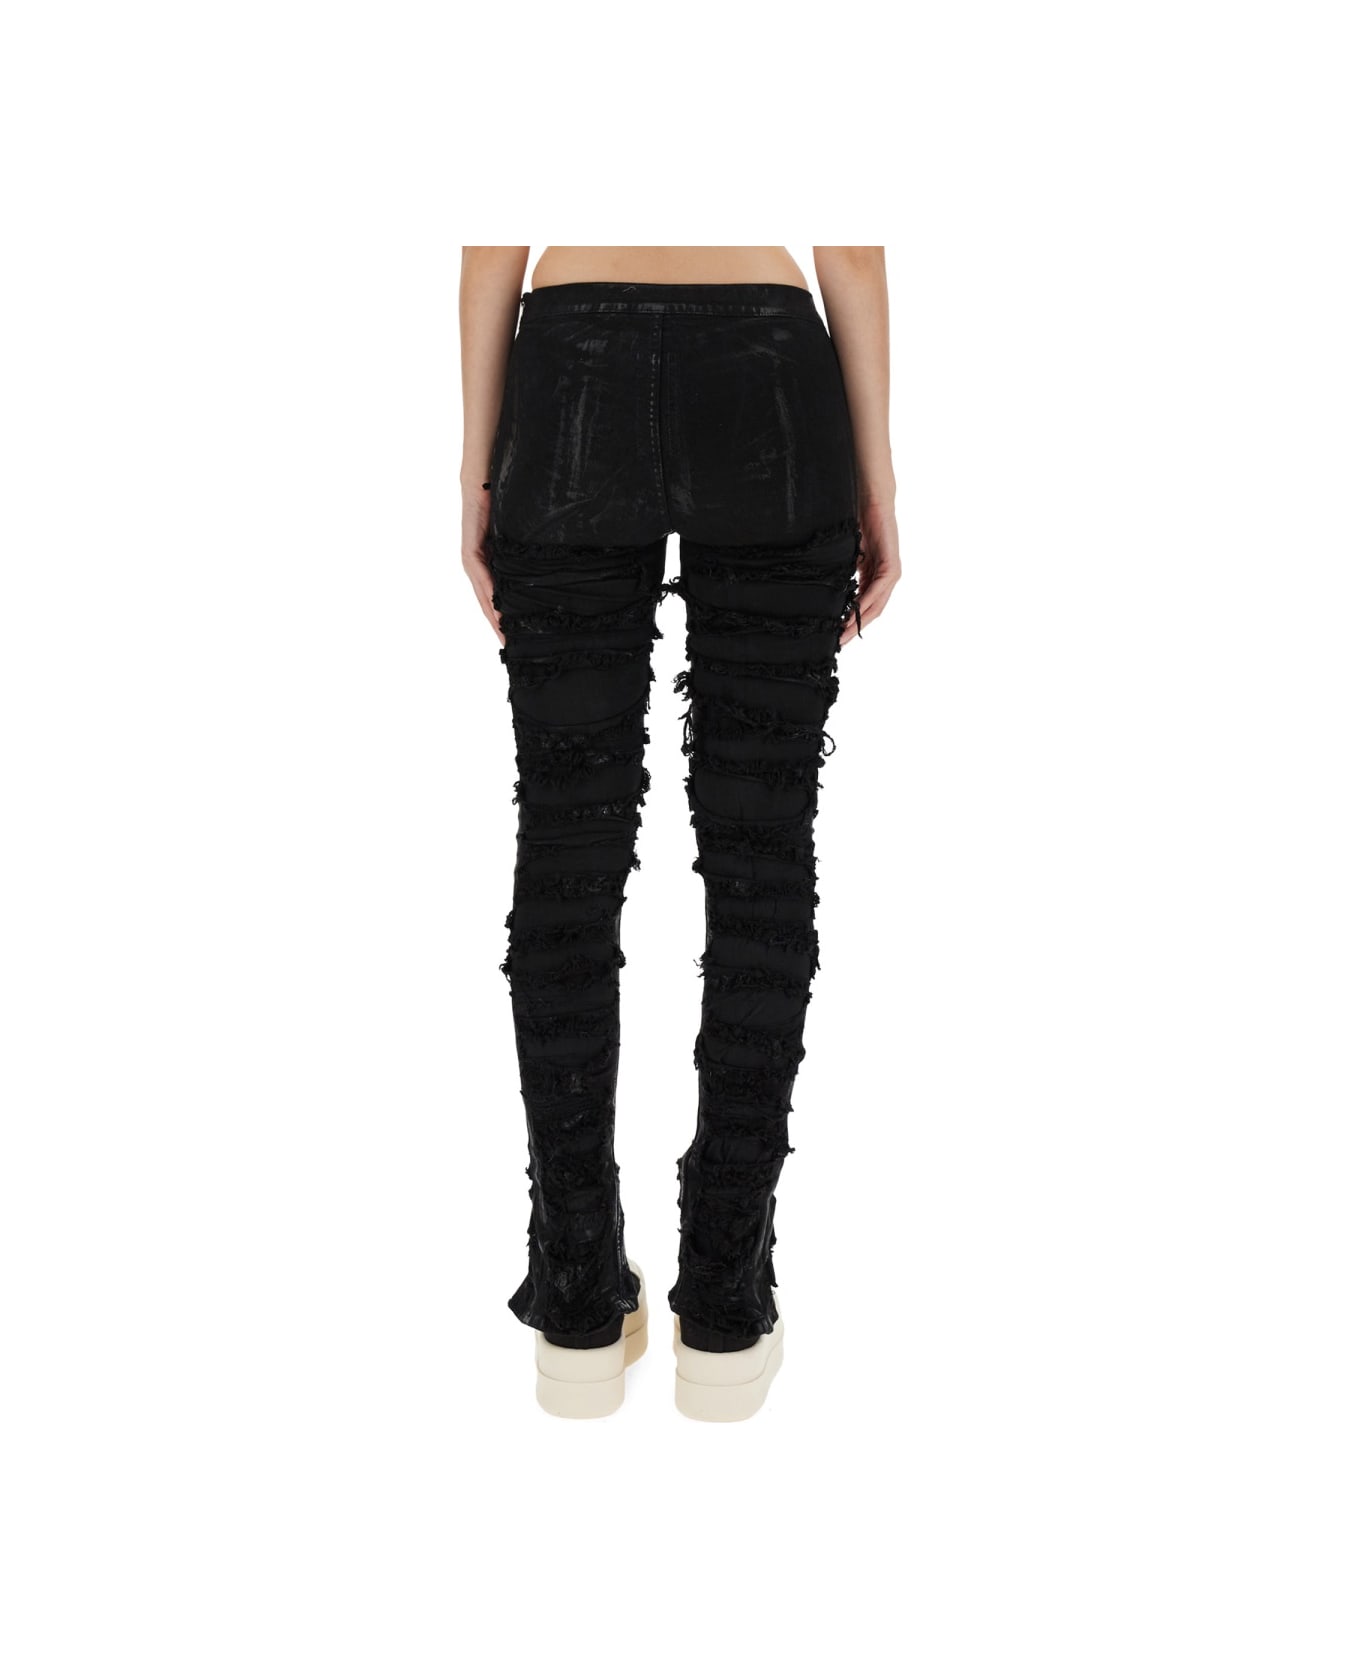 DRKSHDW Cotton Pants - Black